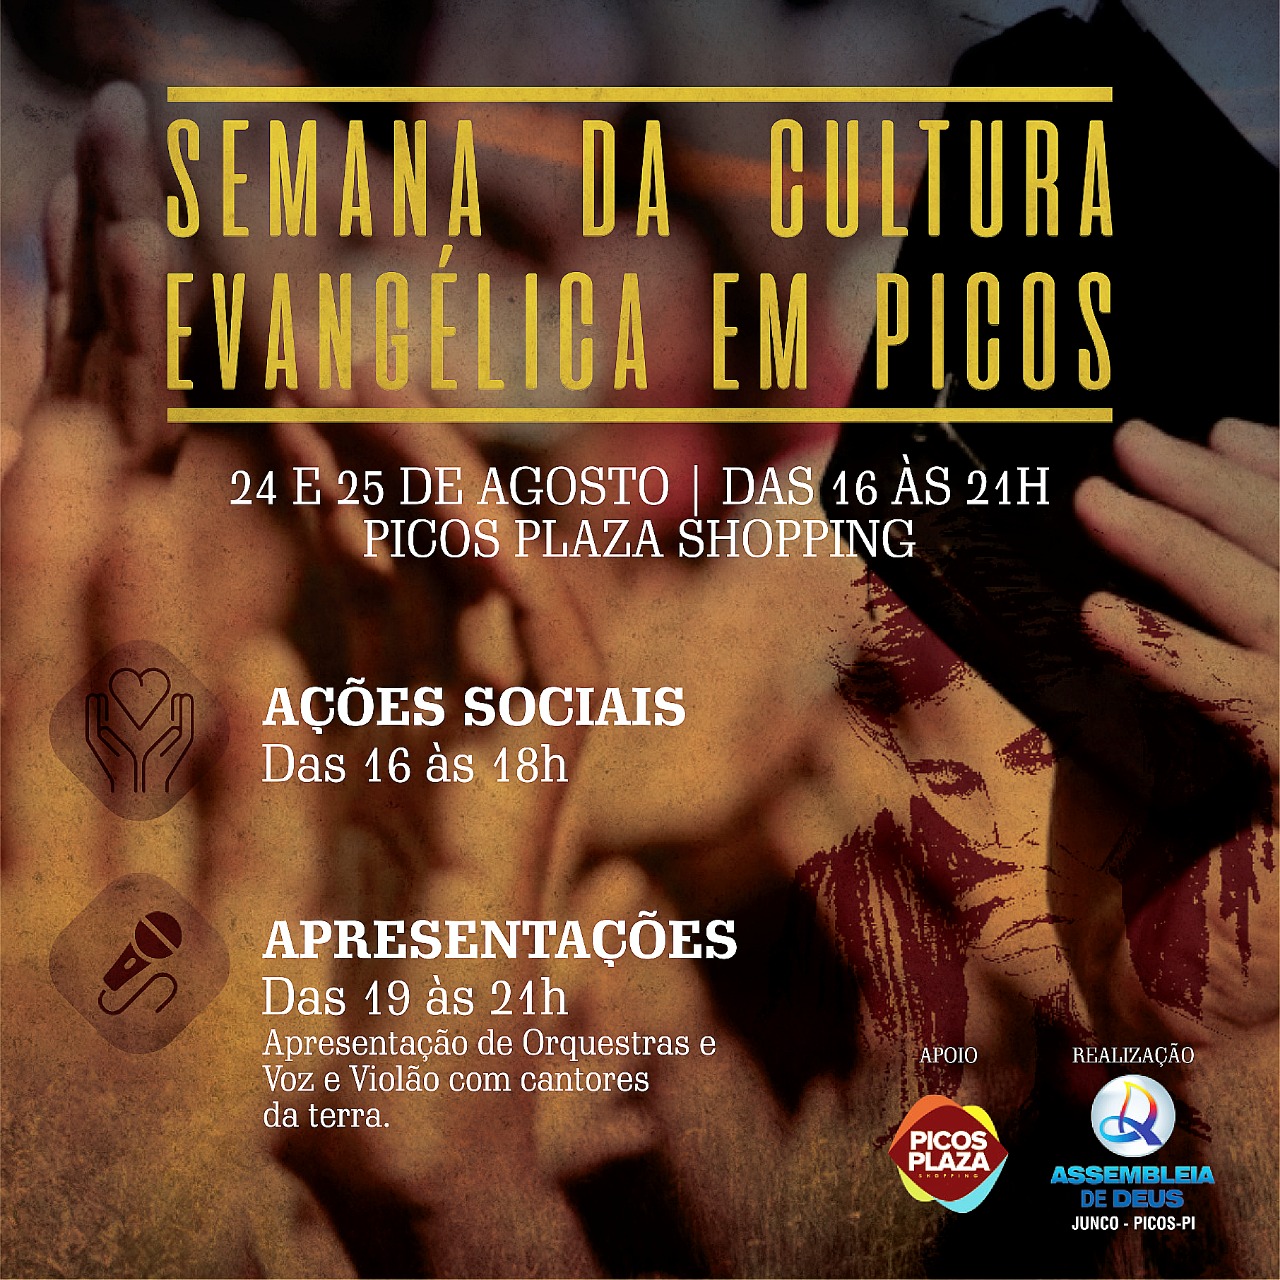 I Semana da Cultura Evangélica de Picos será marcada por ações sociais e arte